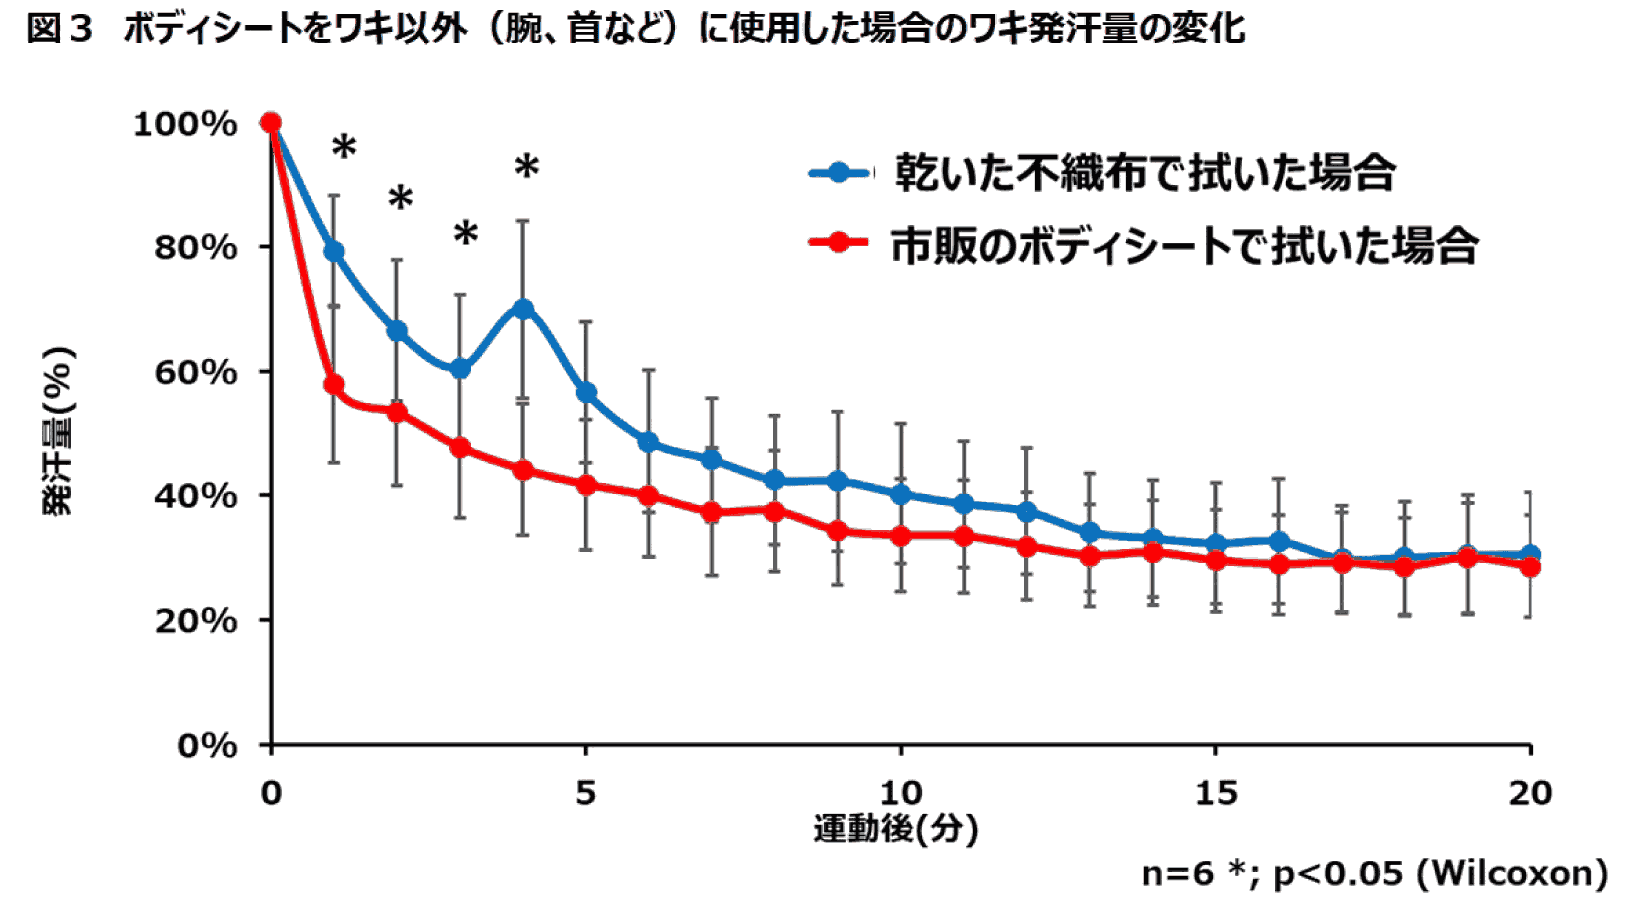 （図3）ボディシートをワキ以外（腕、首など）に使用した場合のワキ発汗量の変化